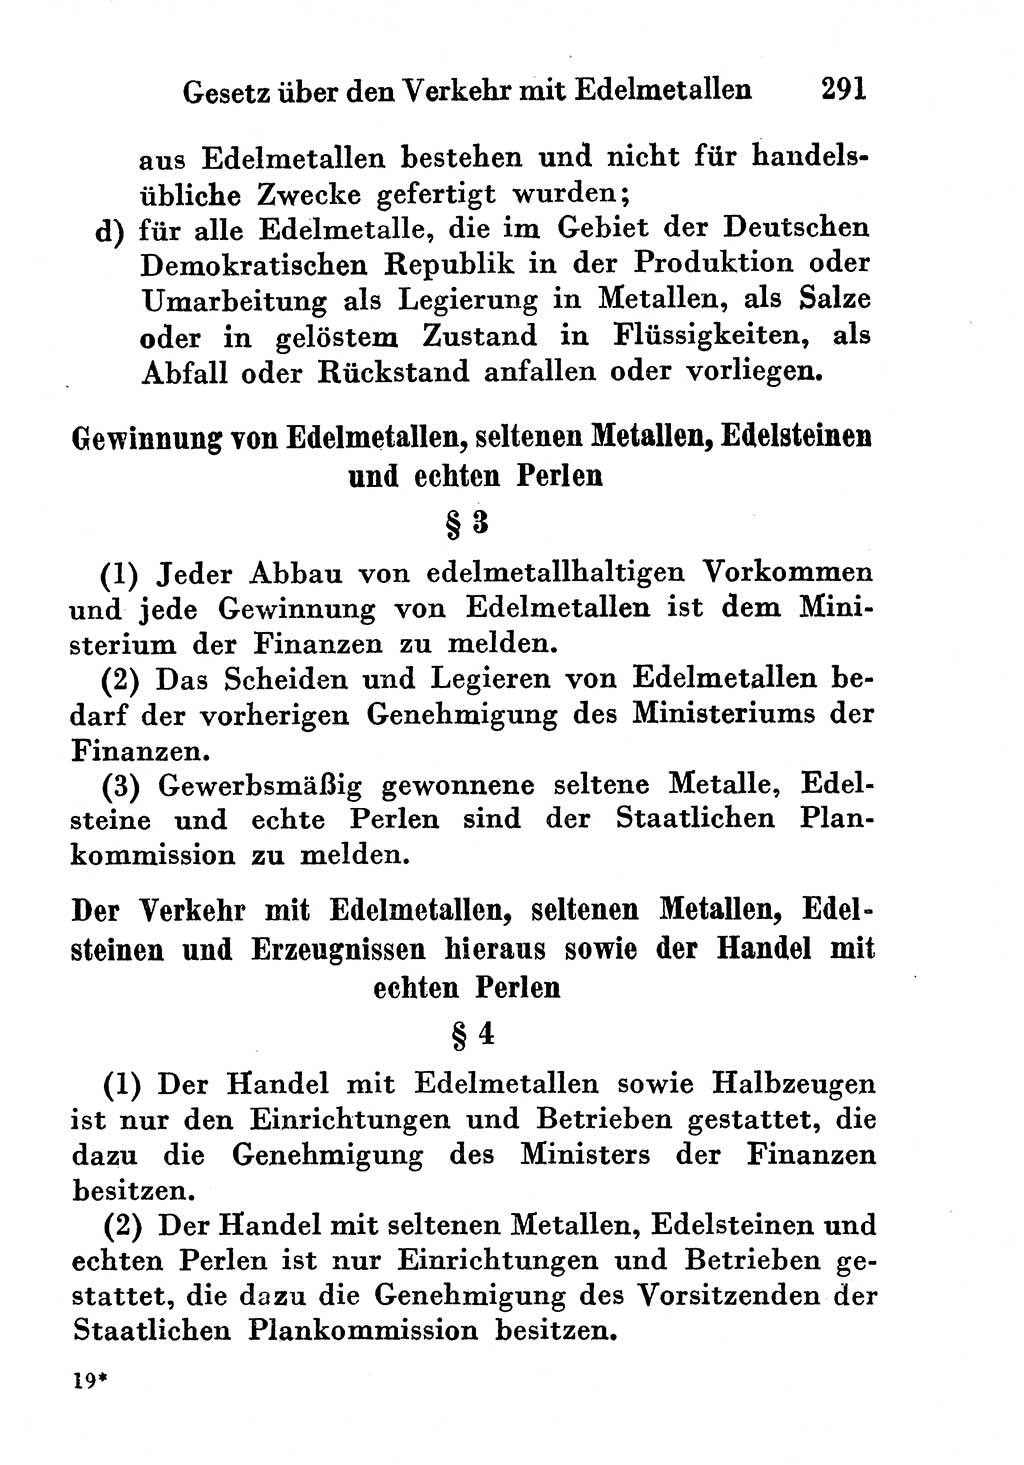 Strafgesetzbuch (StGB) und andere Strafgesetze [Deutsche Demokratische Republik (DDR)] 1956, Seite 291 (StGB Strafges. DDR 1956, S. 291)